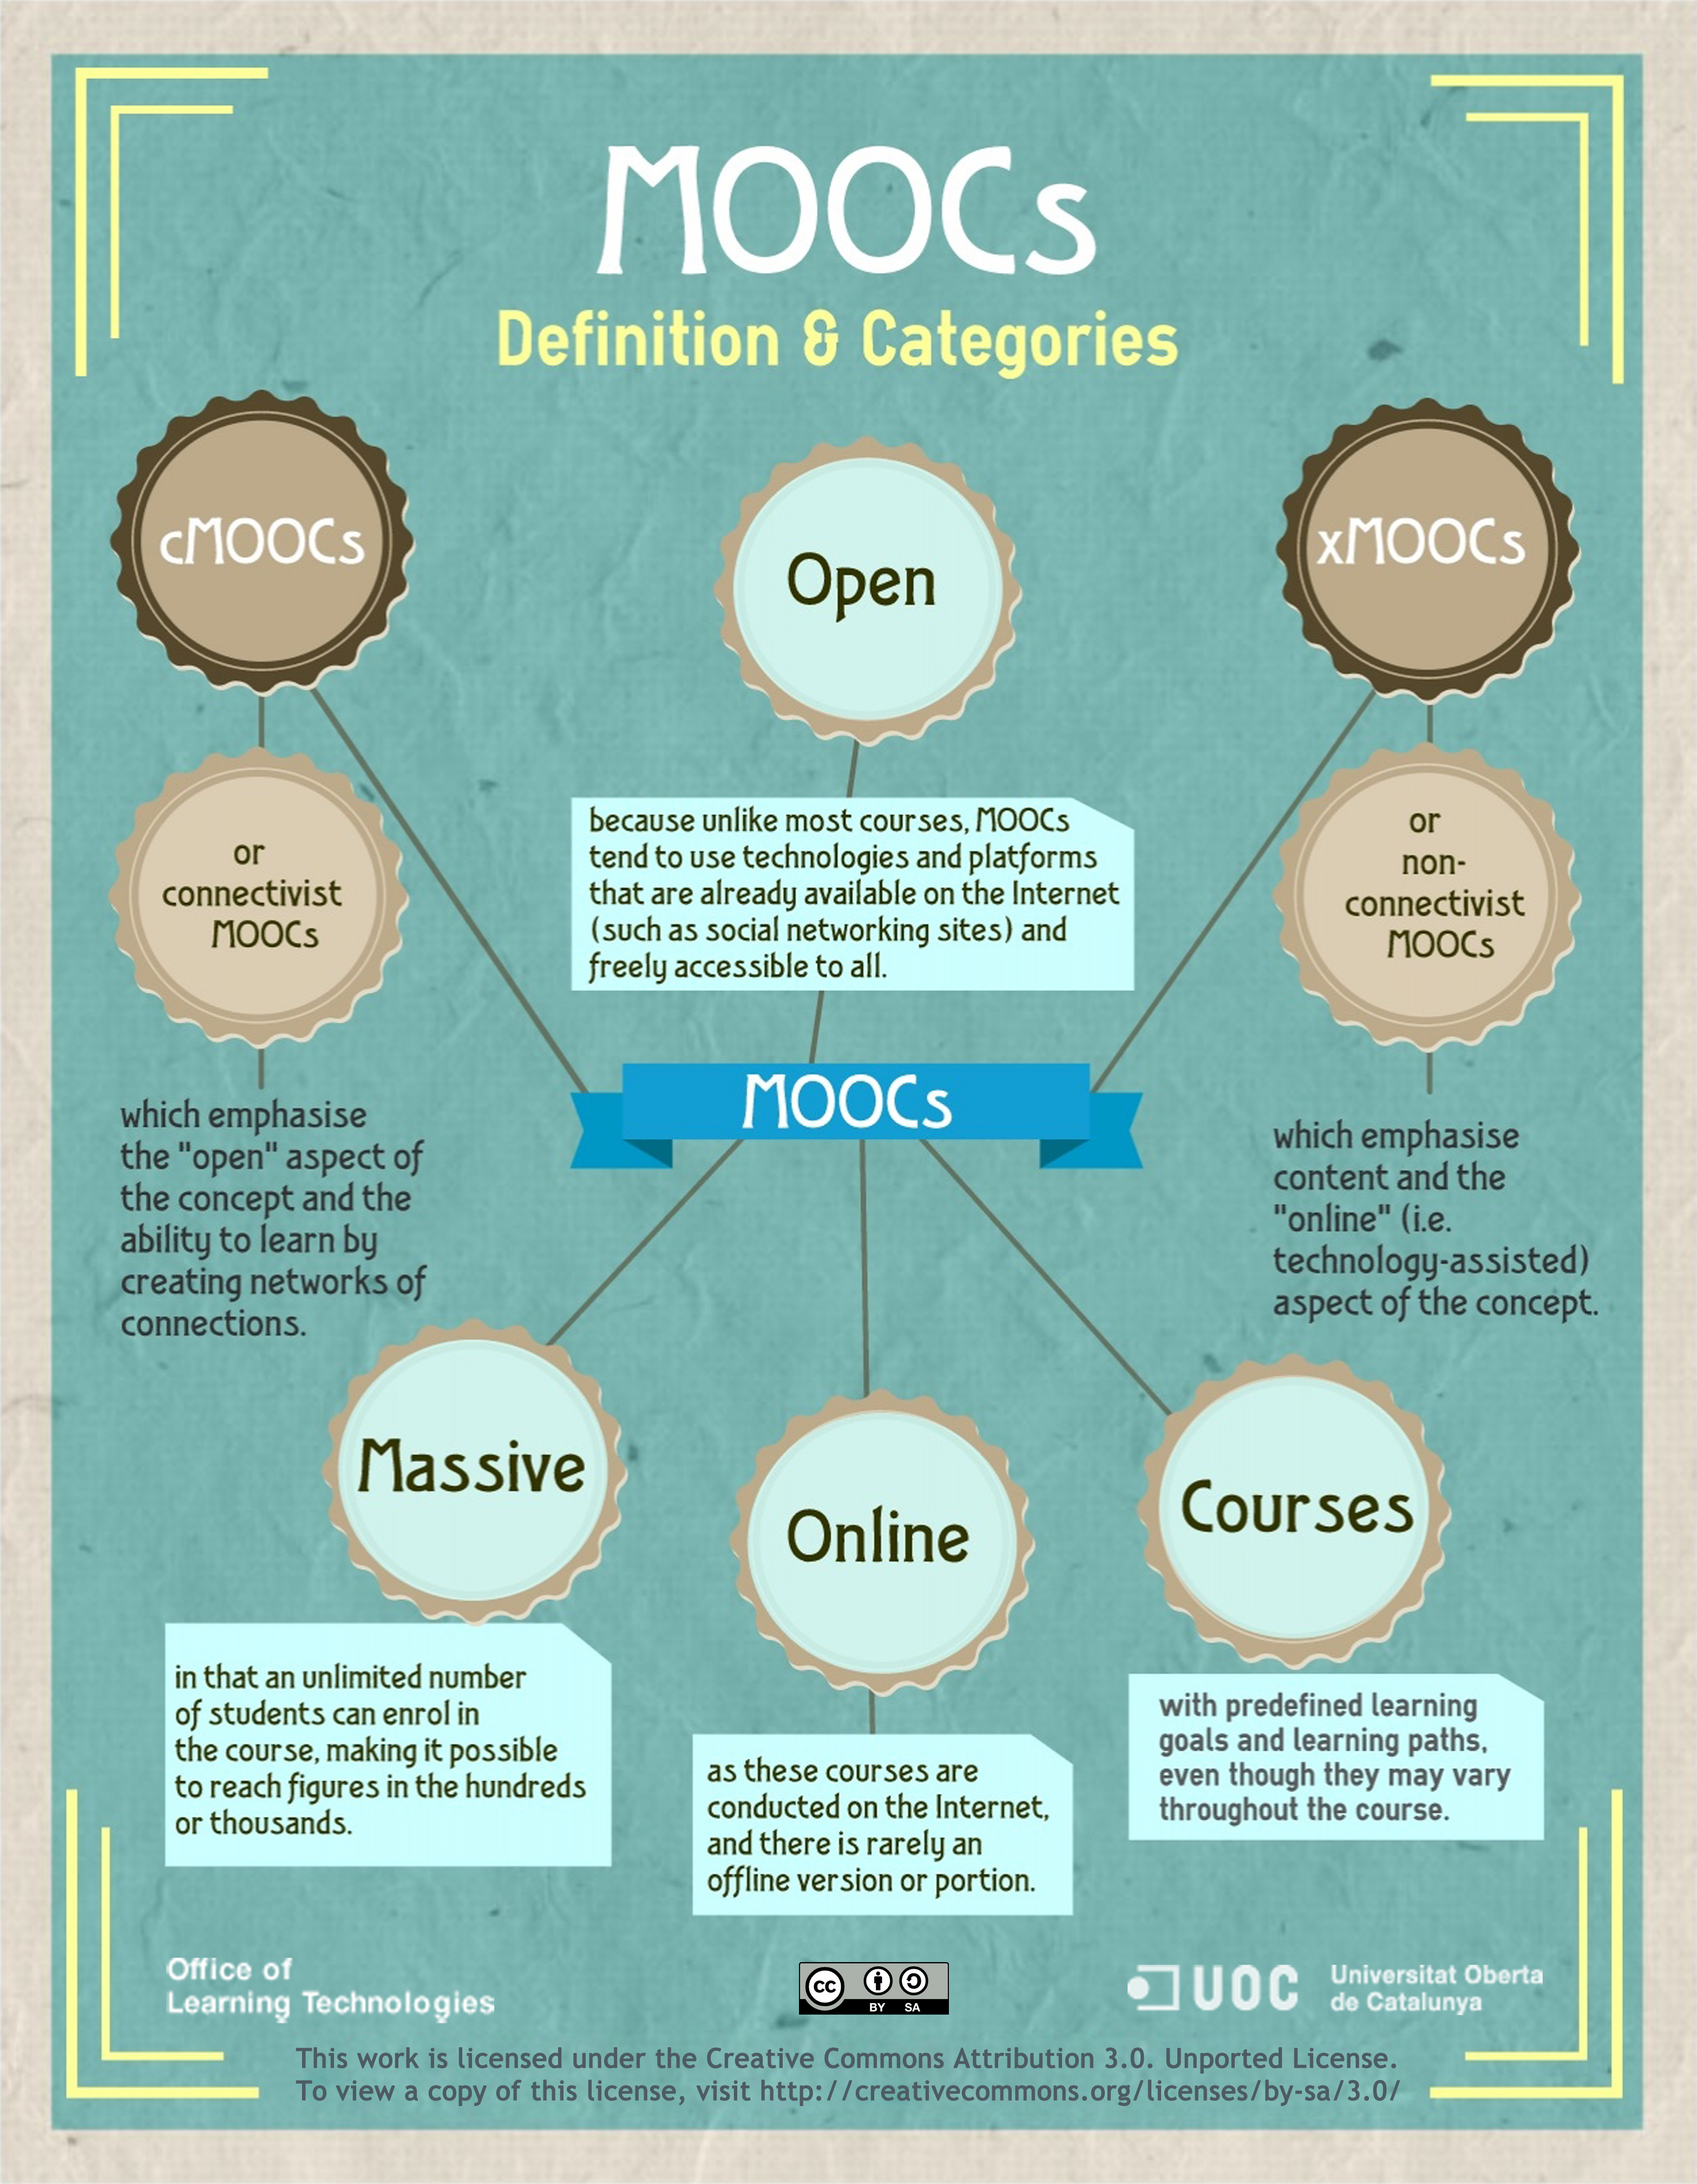 MOOCs Defined